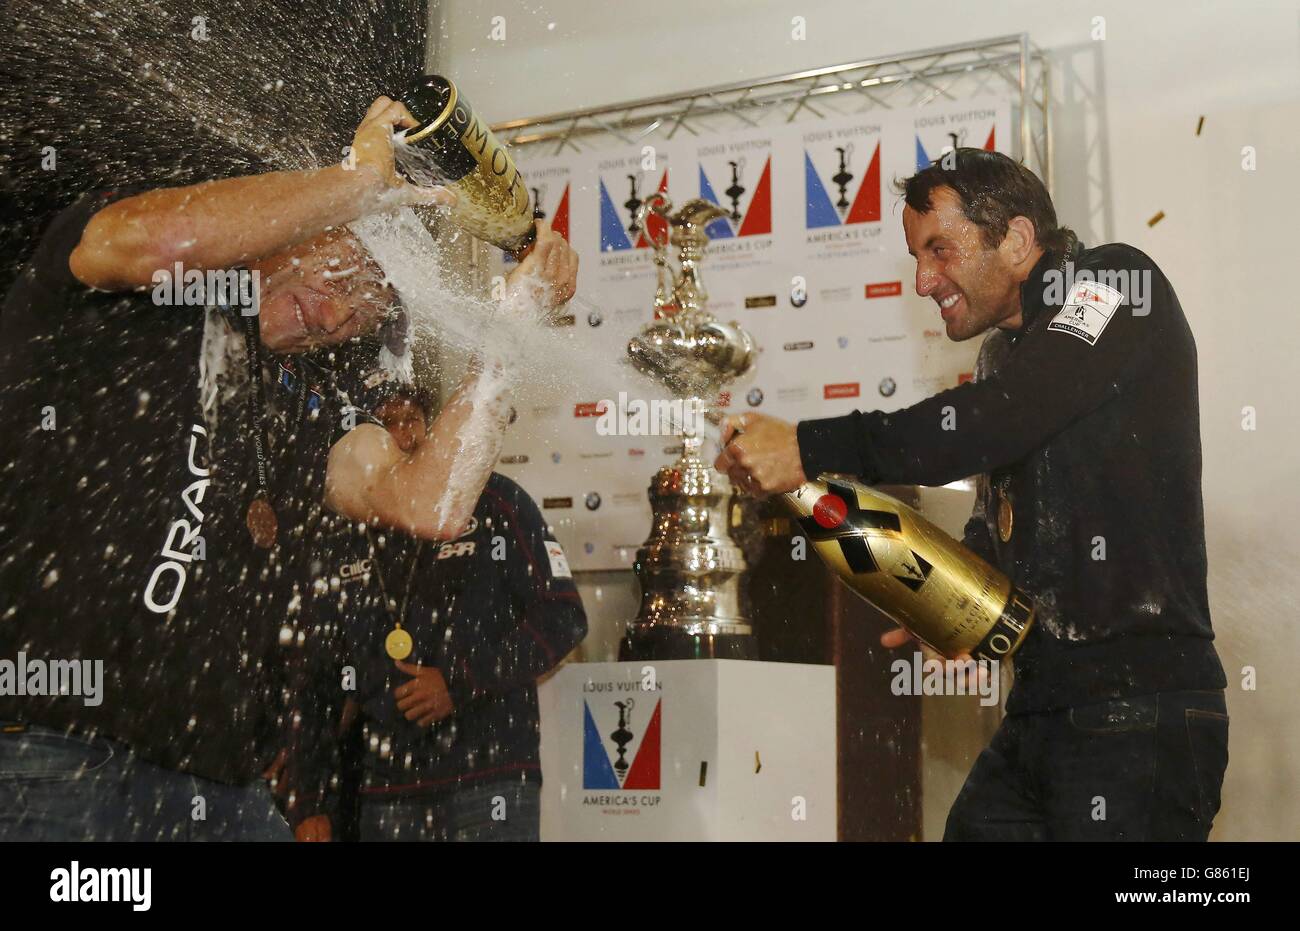 Ben Ainslie (à droite), skipper de l'équipe britannique de LA barre soutenue par Land Rover (Ben Ainslie Racing), vaporise du champagne sur le skipper rival Jimmy Spithill d'Oracle Team USA alors qu'il célèbre la victoire de la coupe britannique de l'America's Cup World Series dans les eaux au large de Portsmouth. Banque D'Images